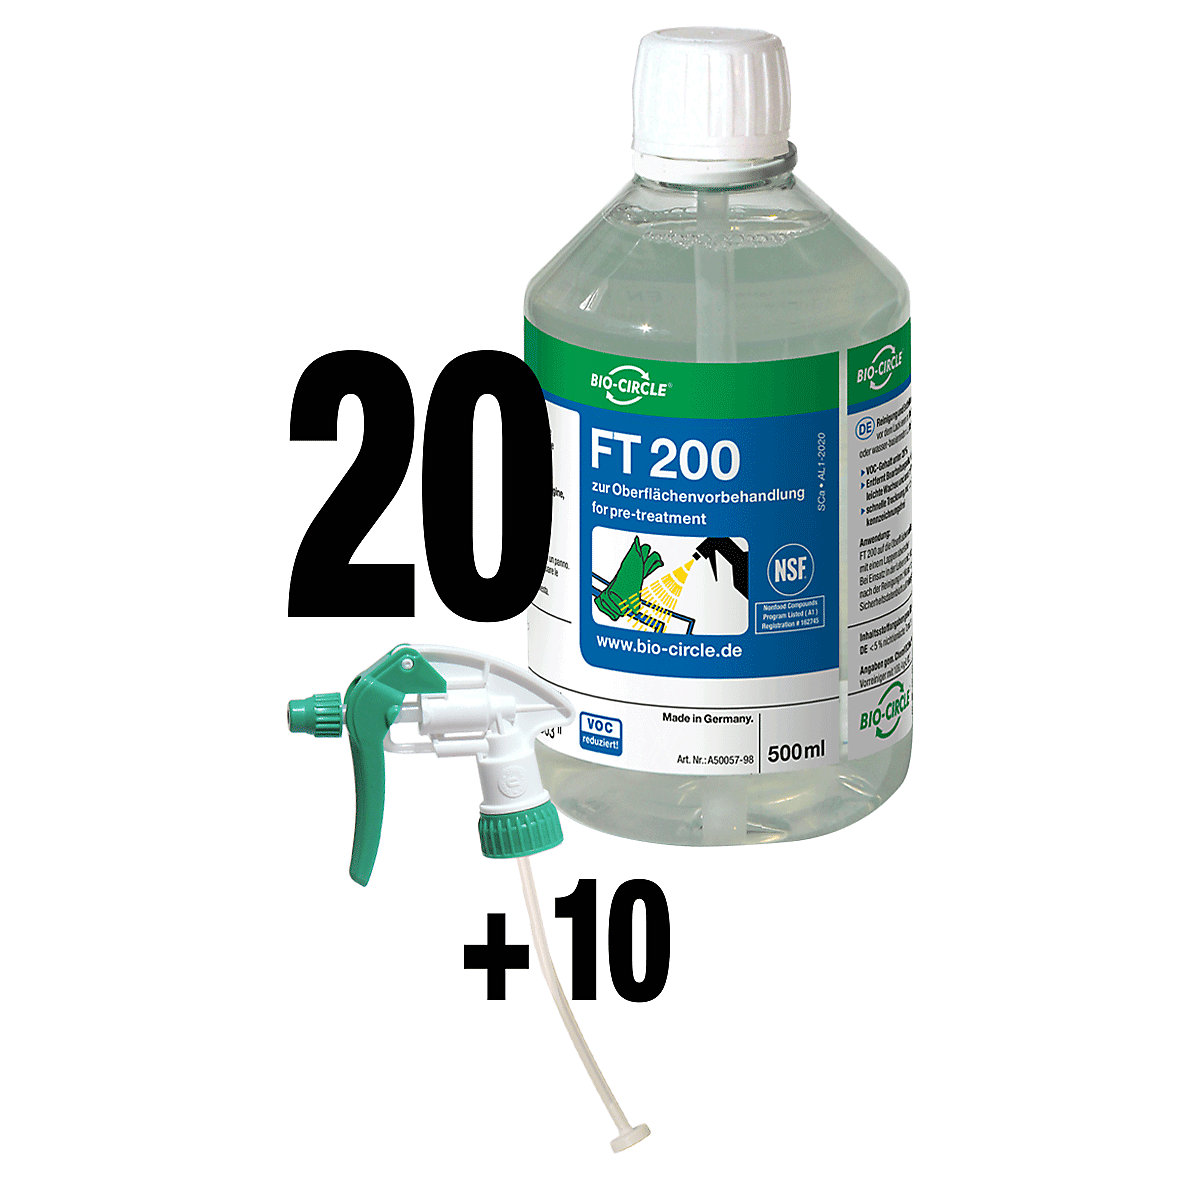 FT 200 cleaner - Bio-Circle